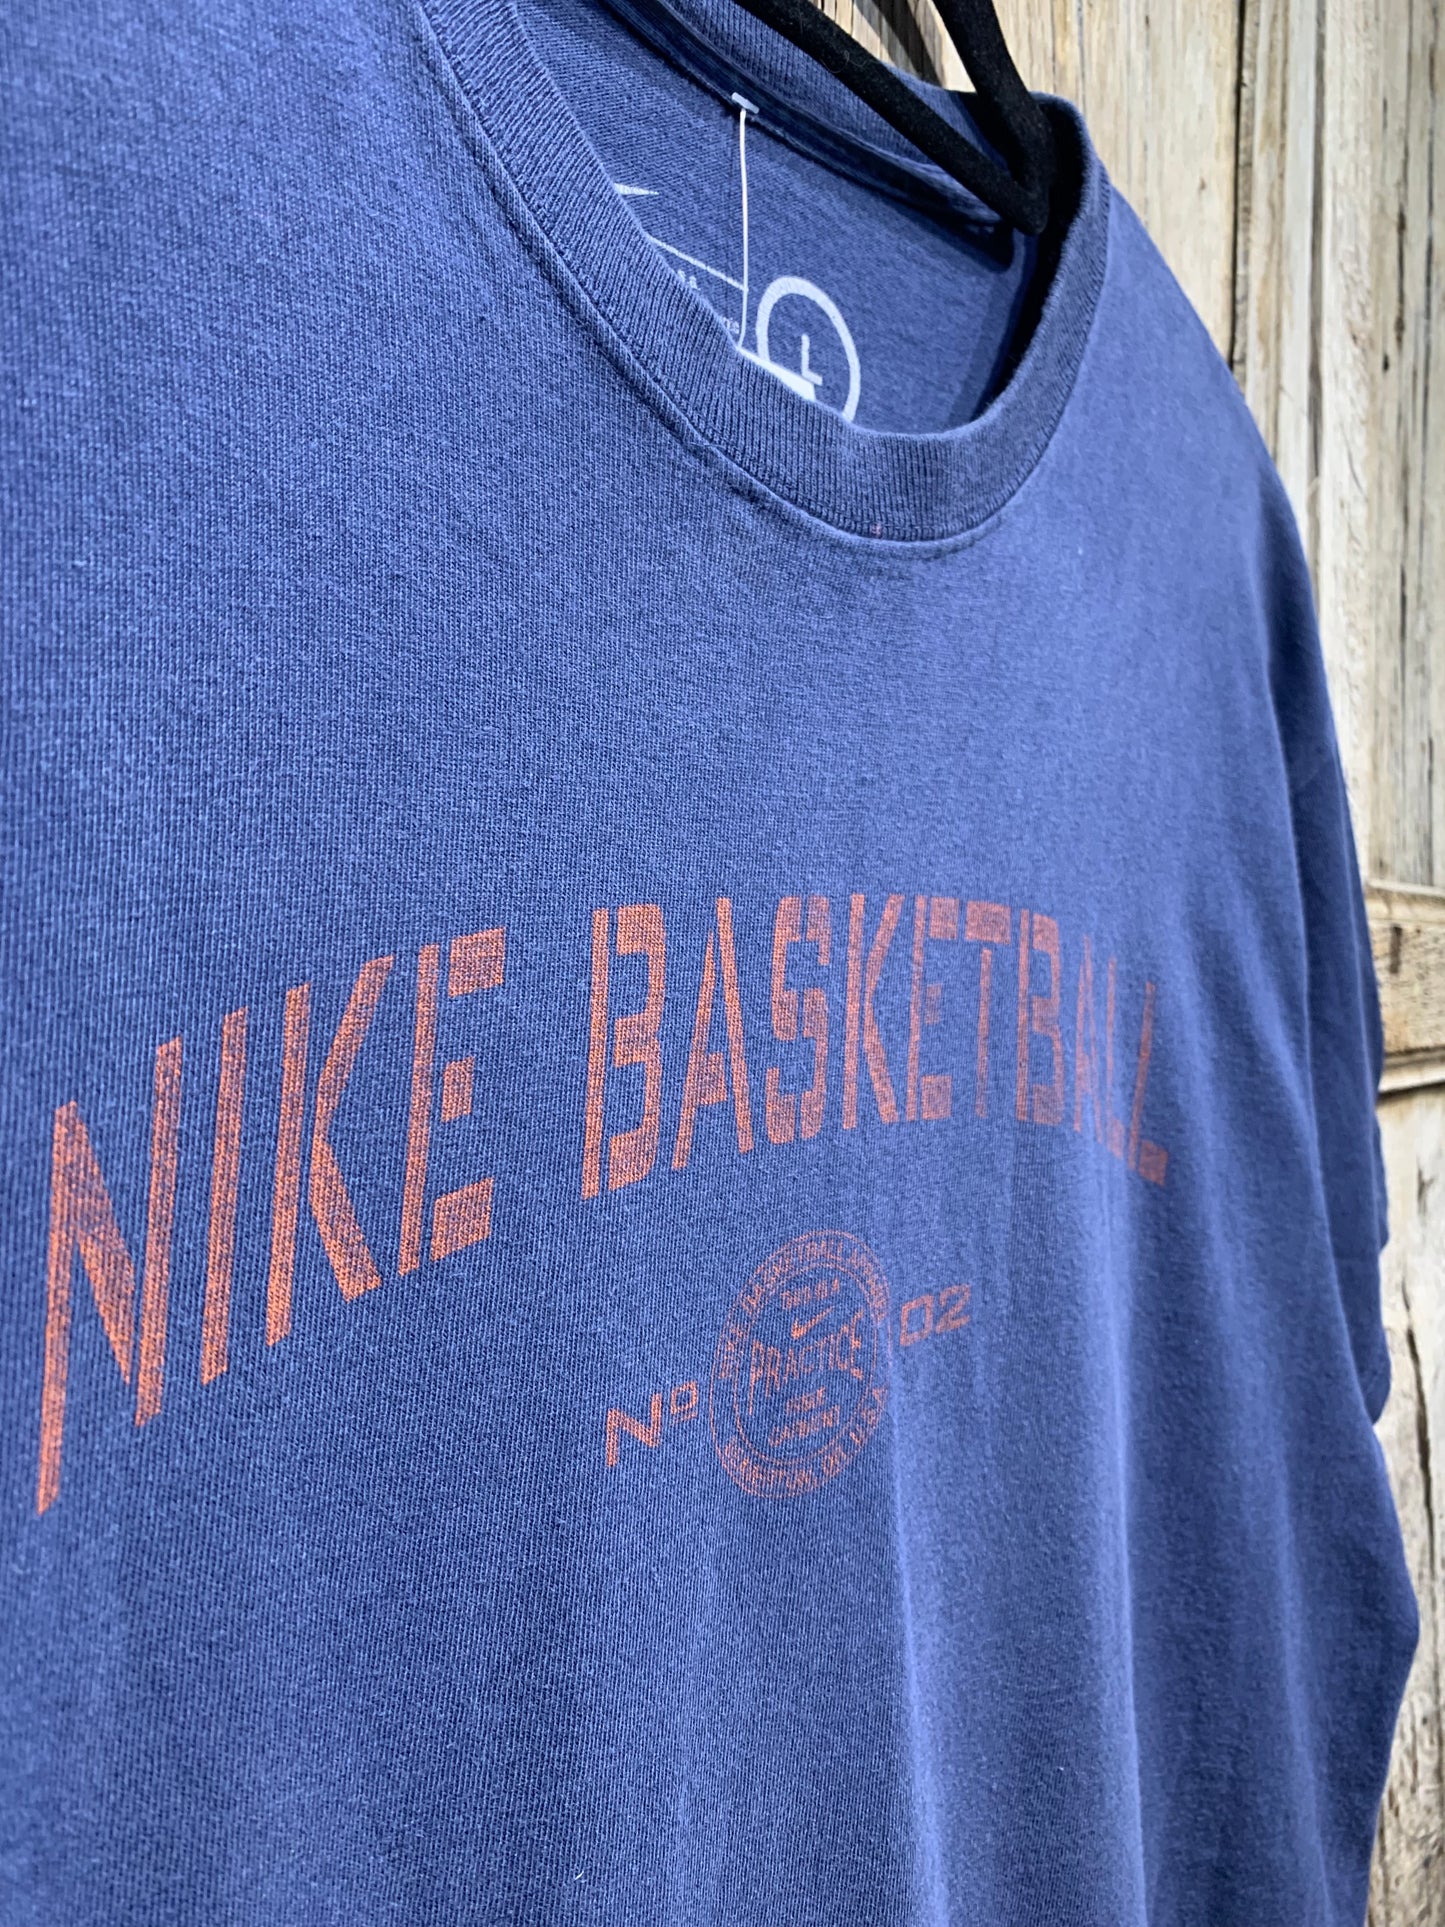 Vintage Blue Nike Basketball Tee